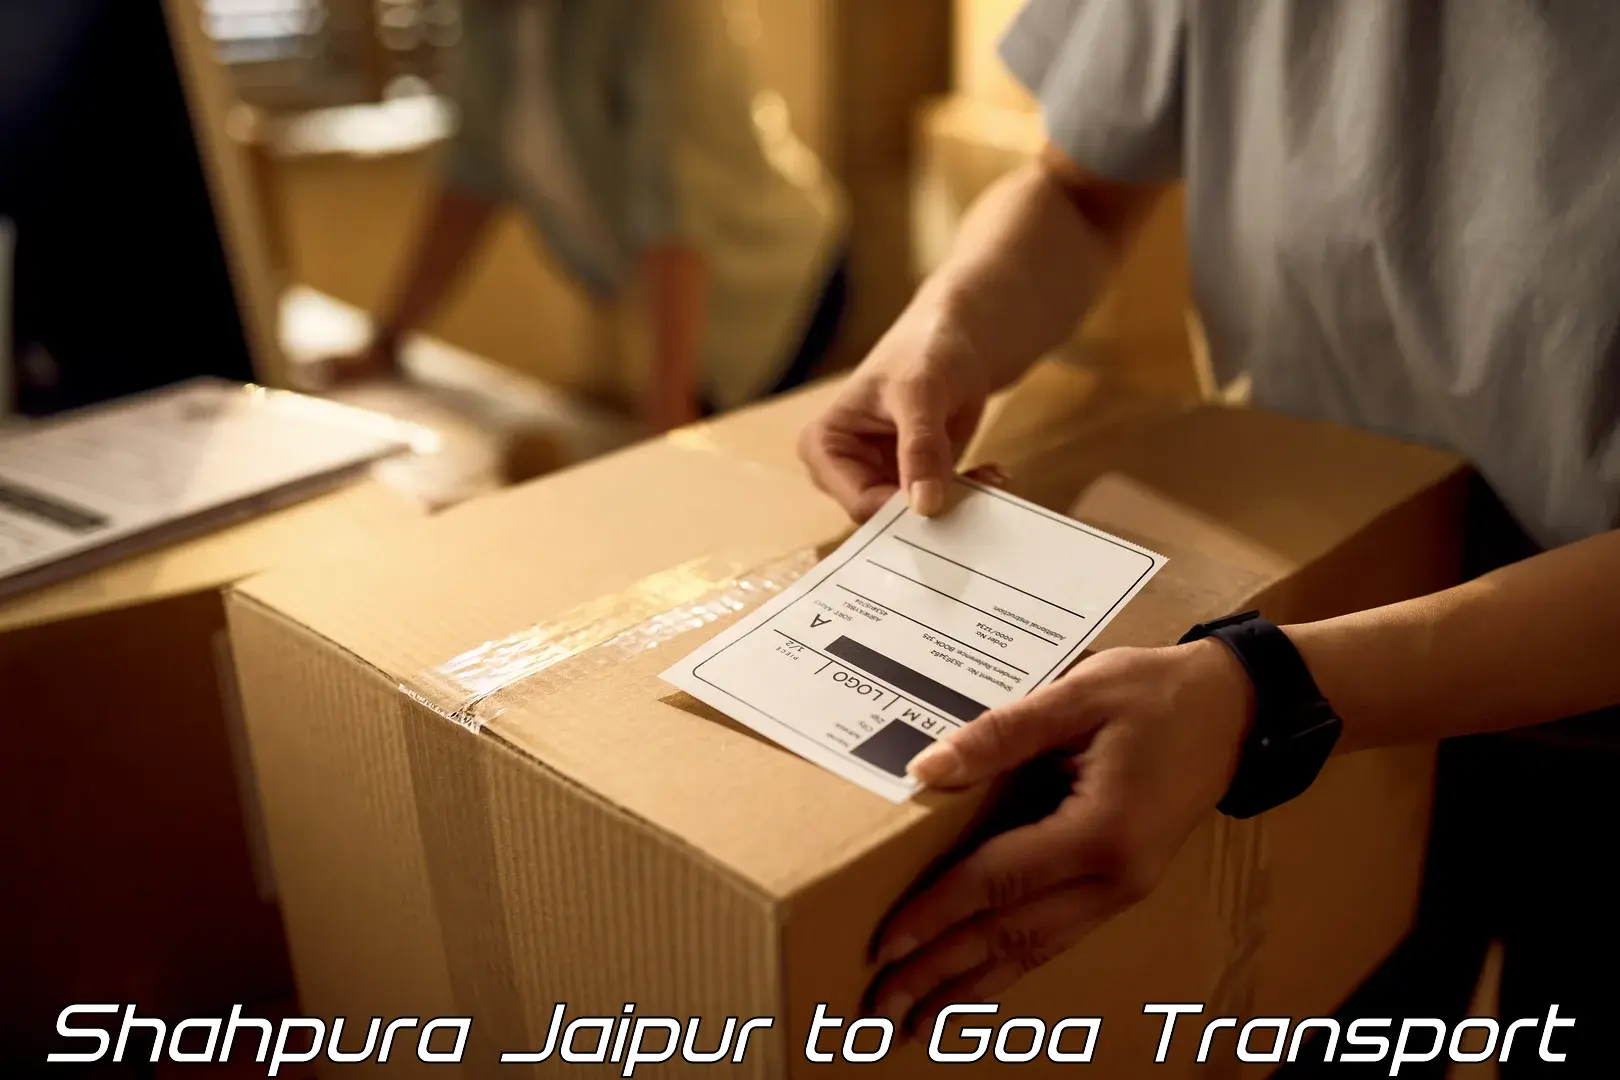 Vehicle transport services Shahpura Jaipur to Ponda